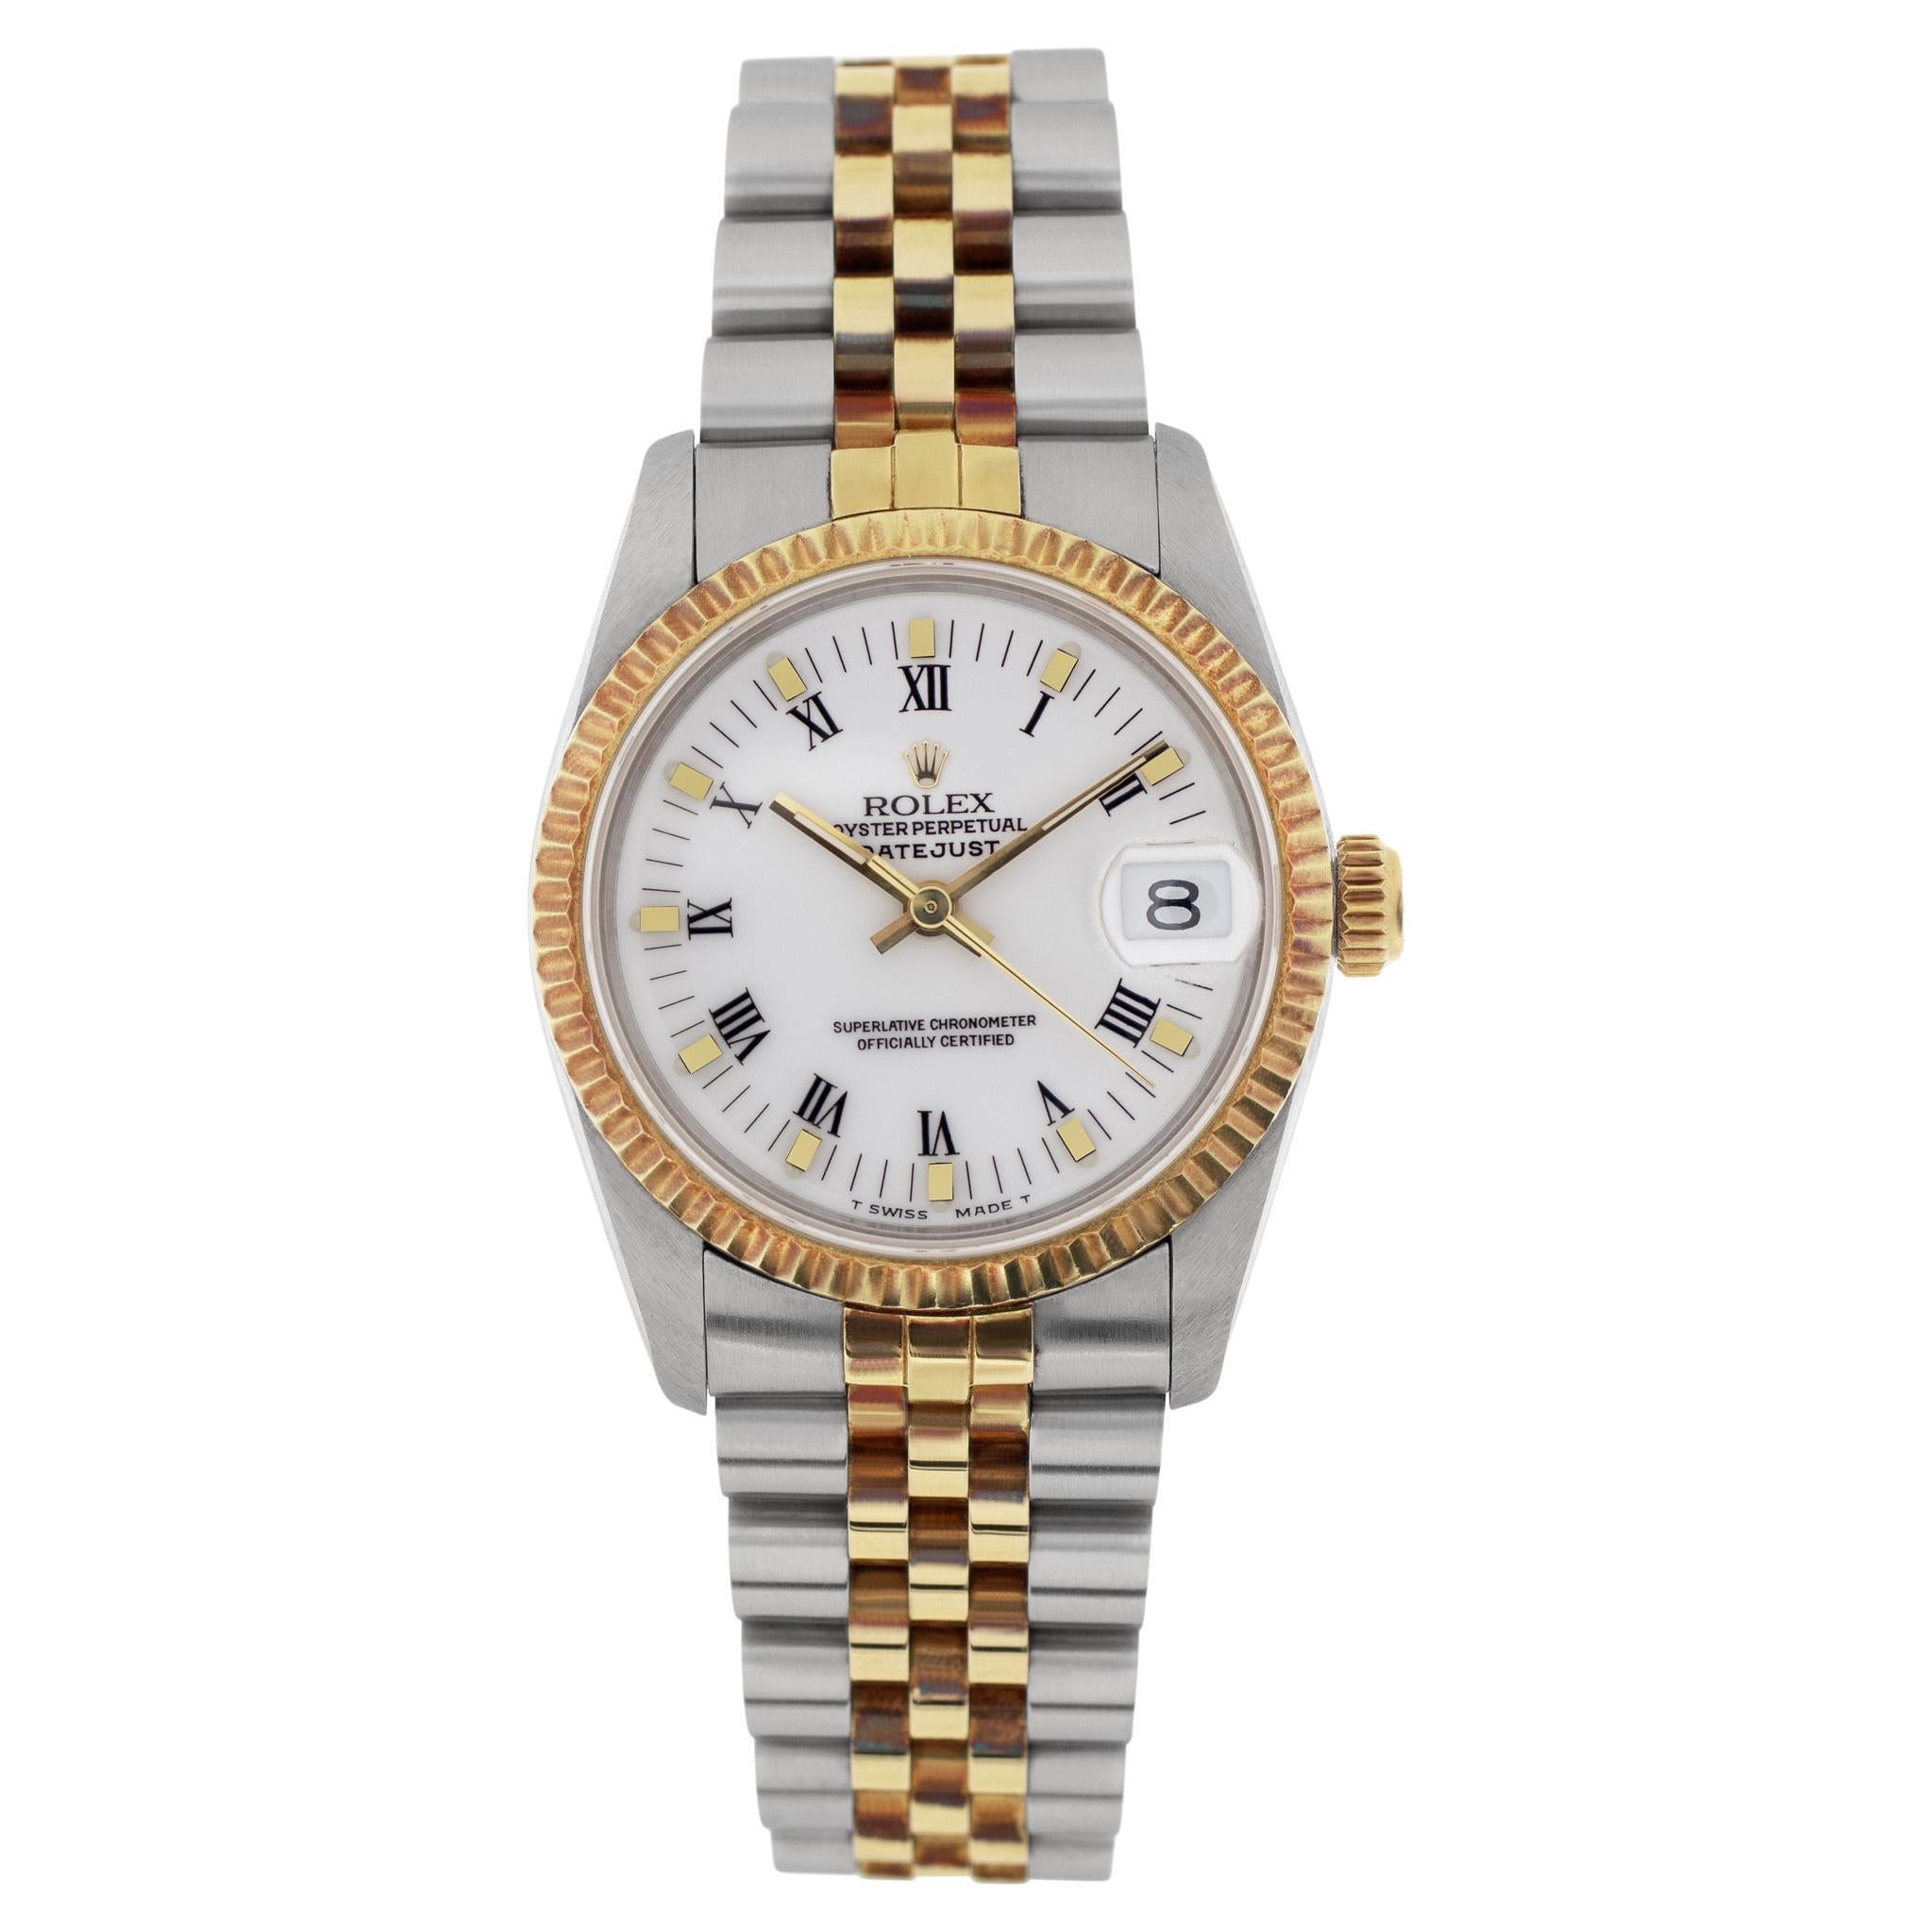 Rolex Datejust 18k Yellow Gold & Stainless Steel Wristwatch Ref 68273